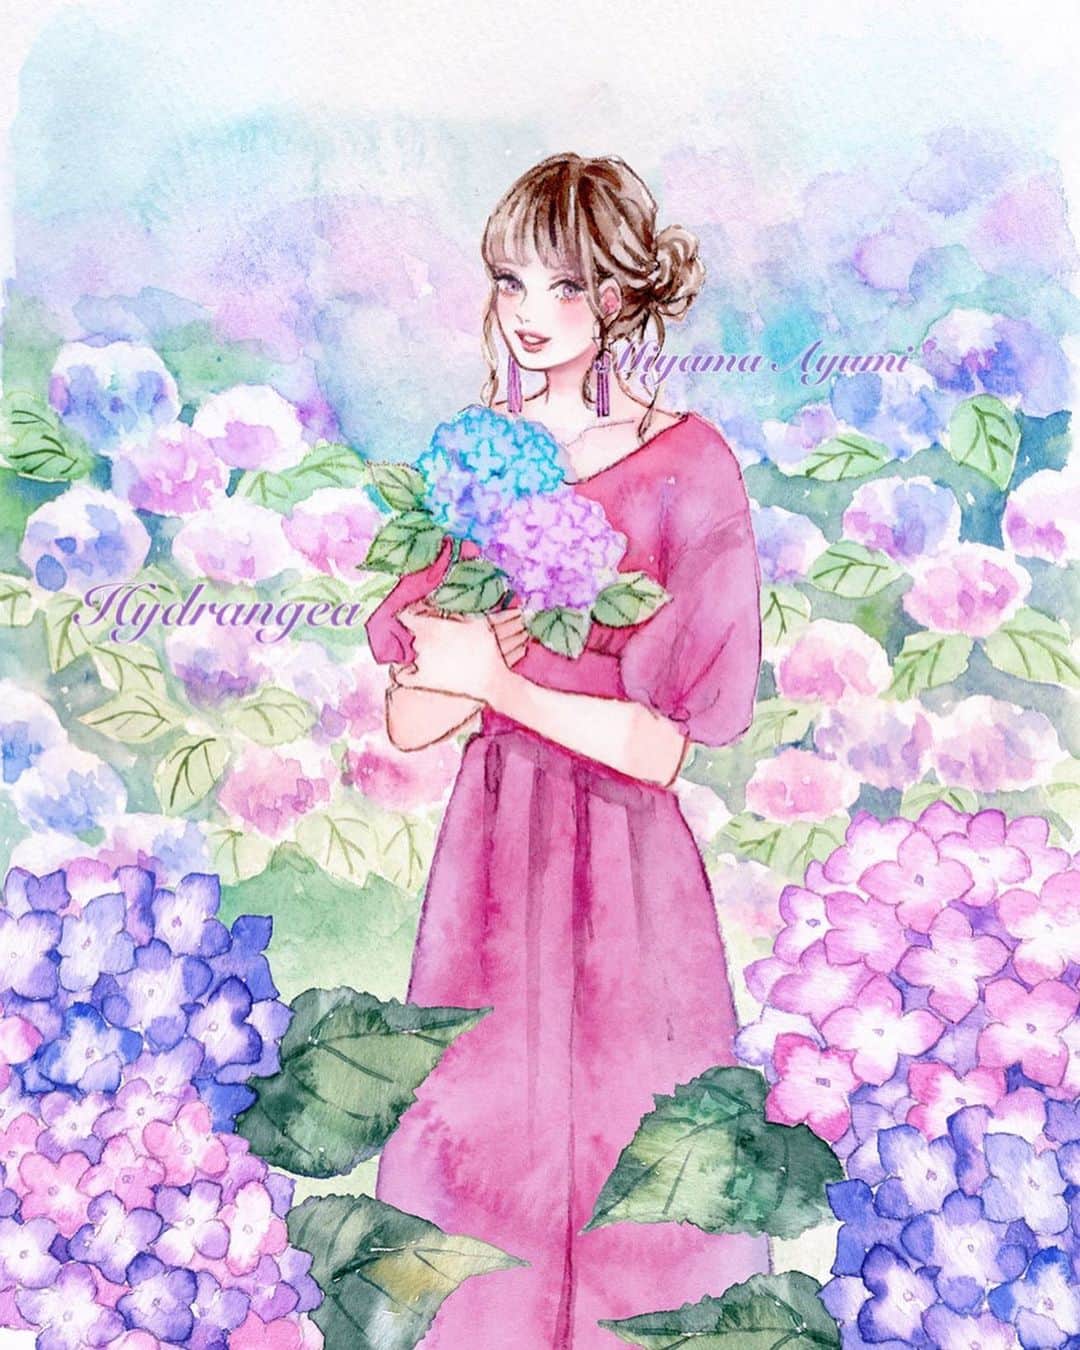 Miya ミヤマアユミ さんのインスタグラム写真 Miya ミヤマアユミ Instagram 紫陽花 1番好きな花かもと思うくらい毎年見惚れてしまいます 今年のカレンダー6月のイラストでした モデルは Xxmiz0rexx さん Artwork Watercolor 水彩 Art Illust